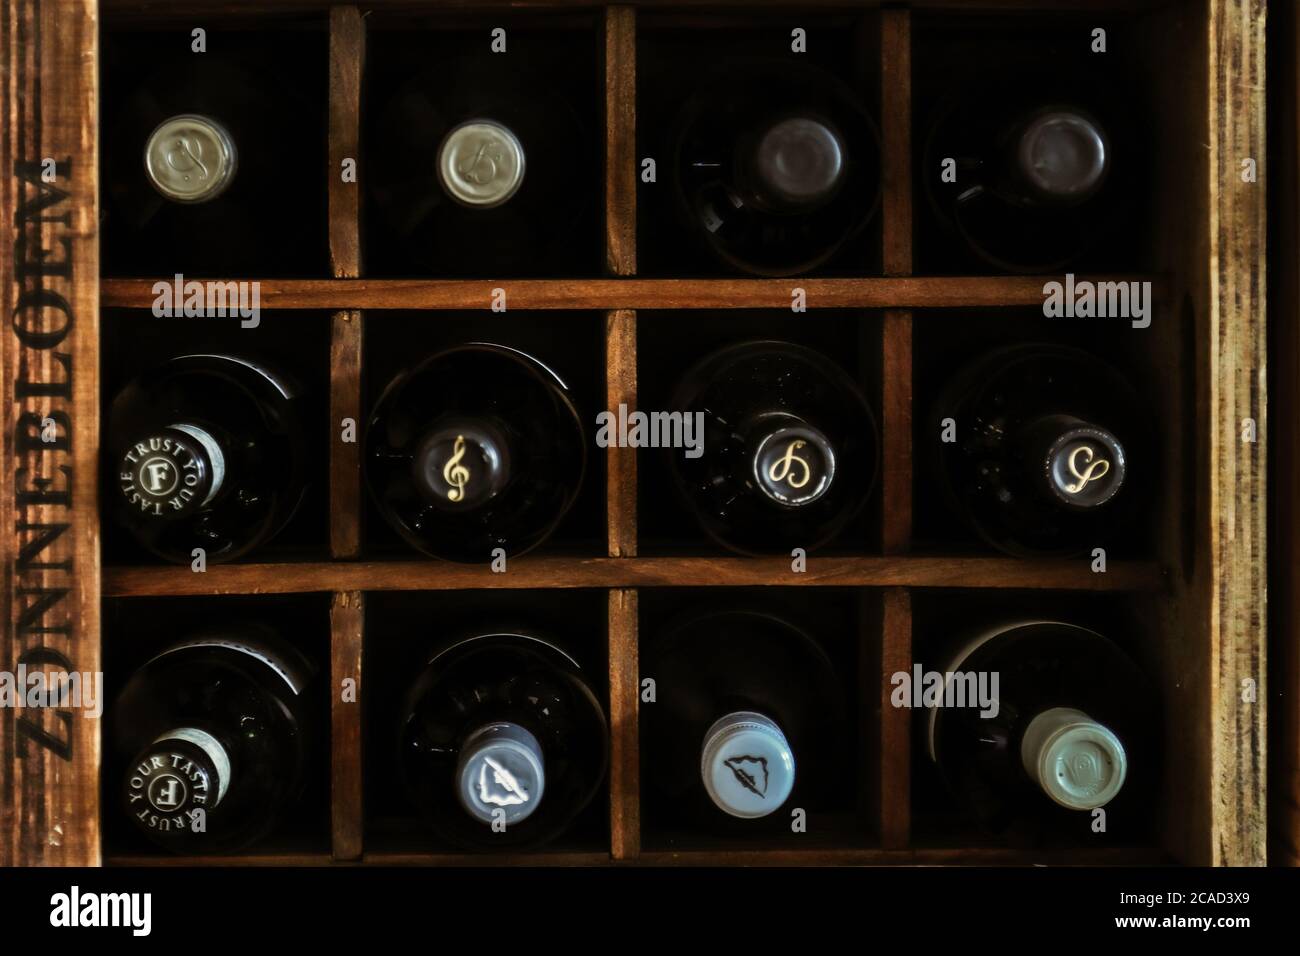 Vista superior de las botellas de vino Foto de stock